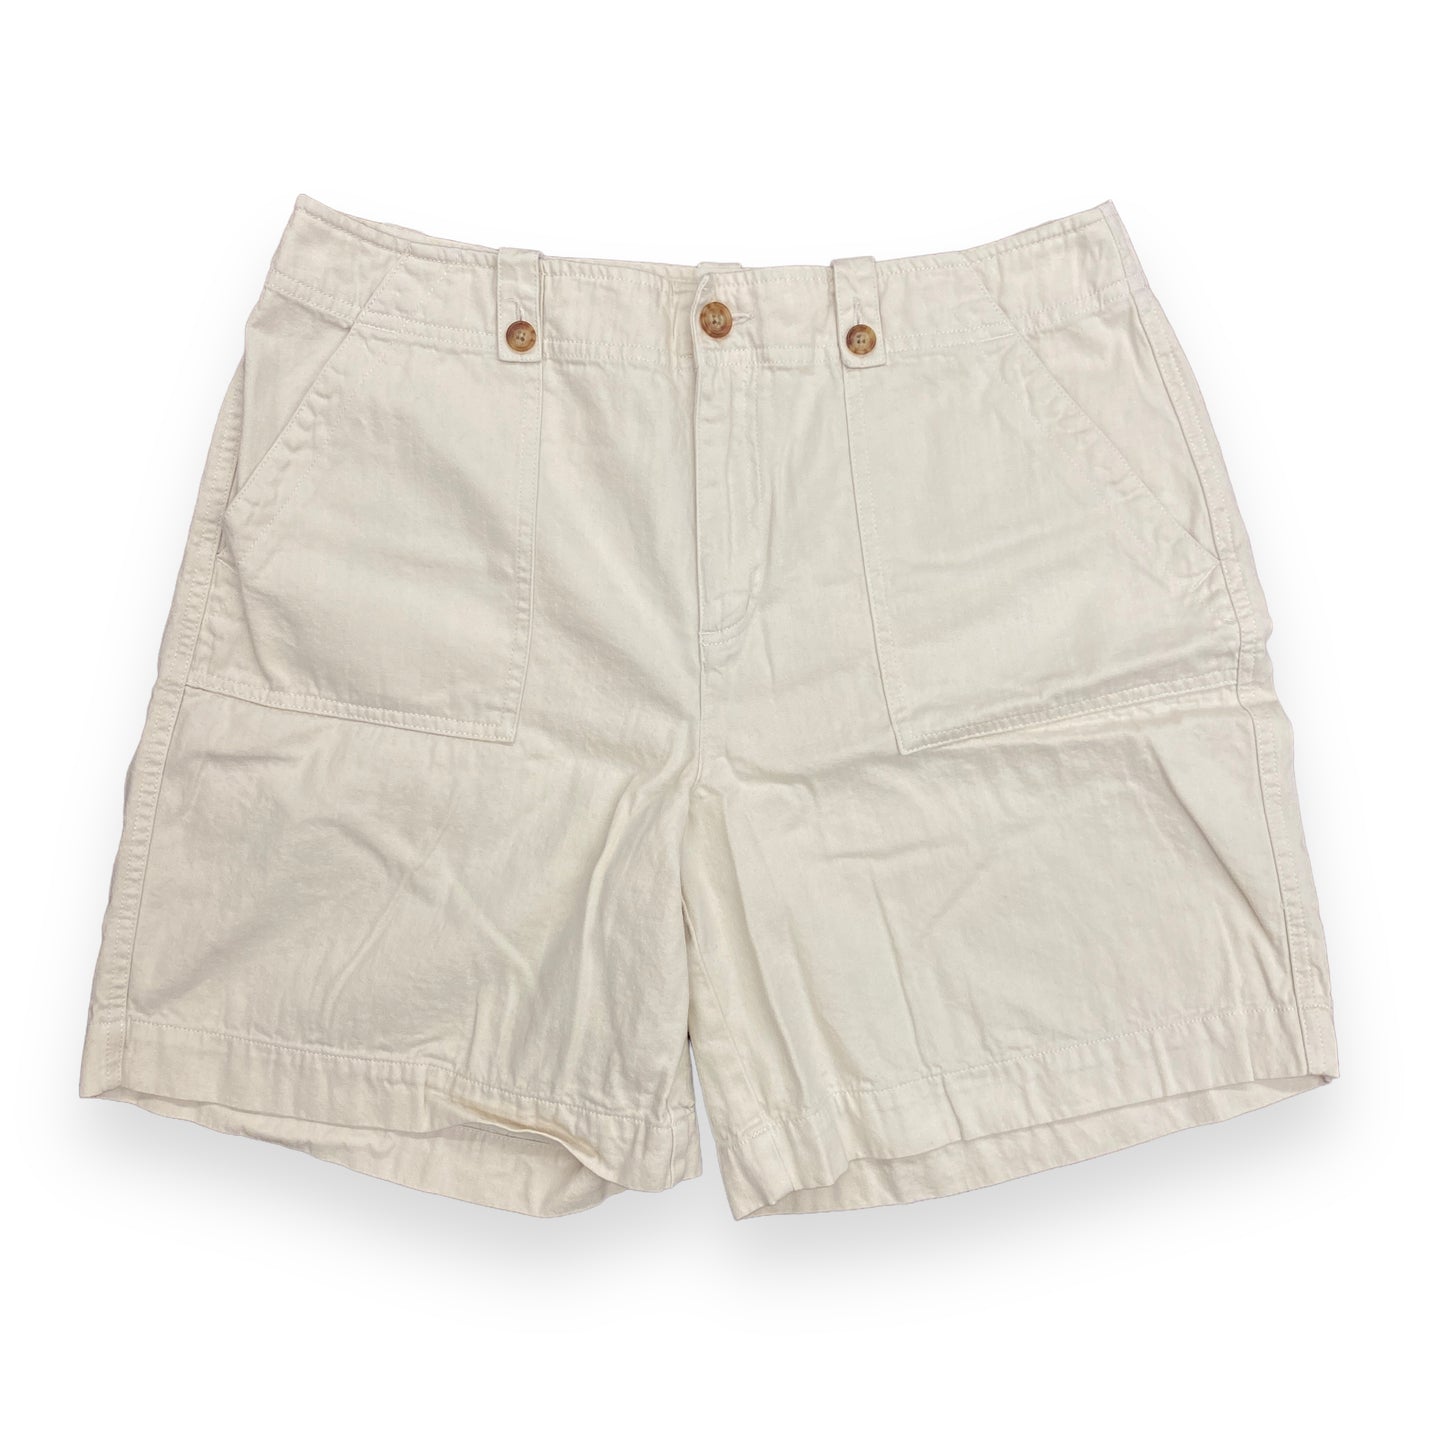 Orvis Off White Cotton Shorts - 34"x7"